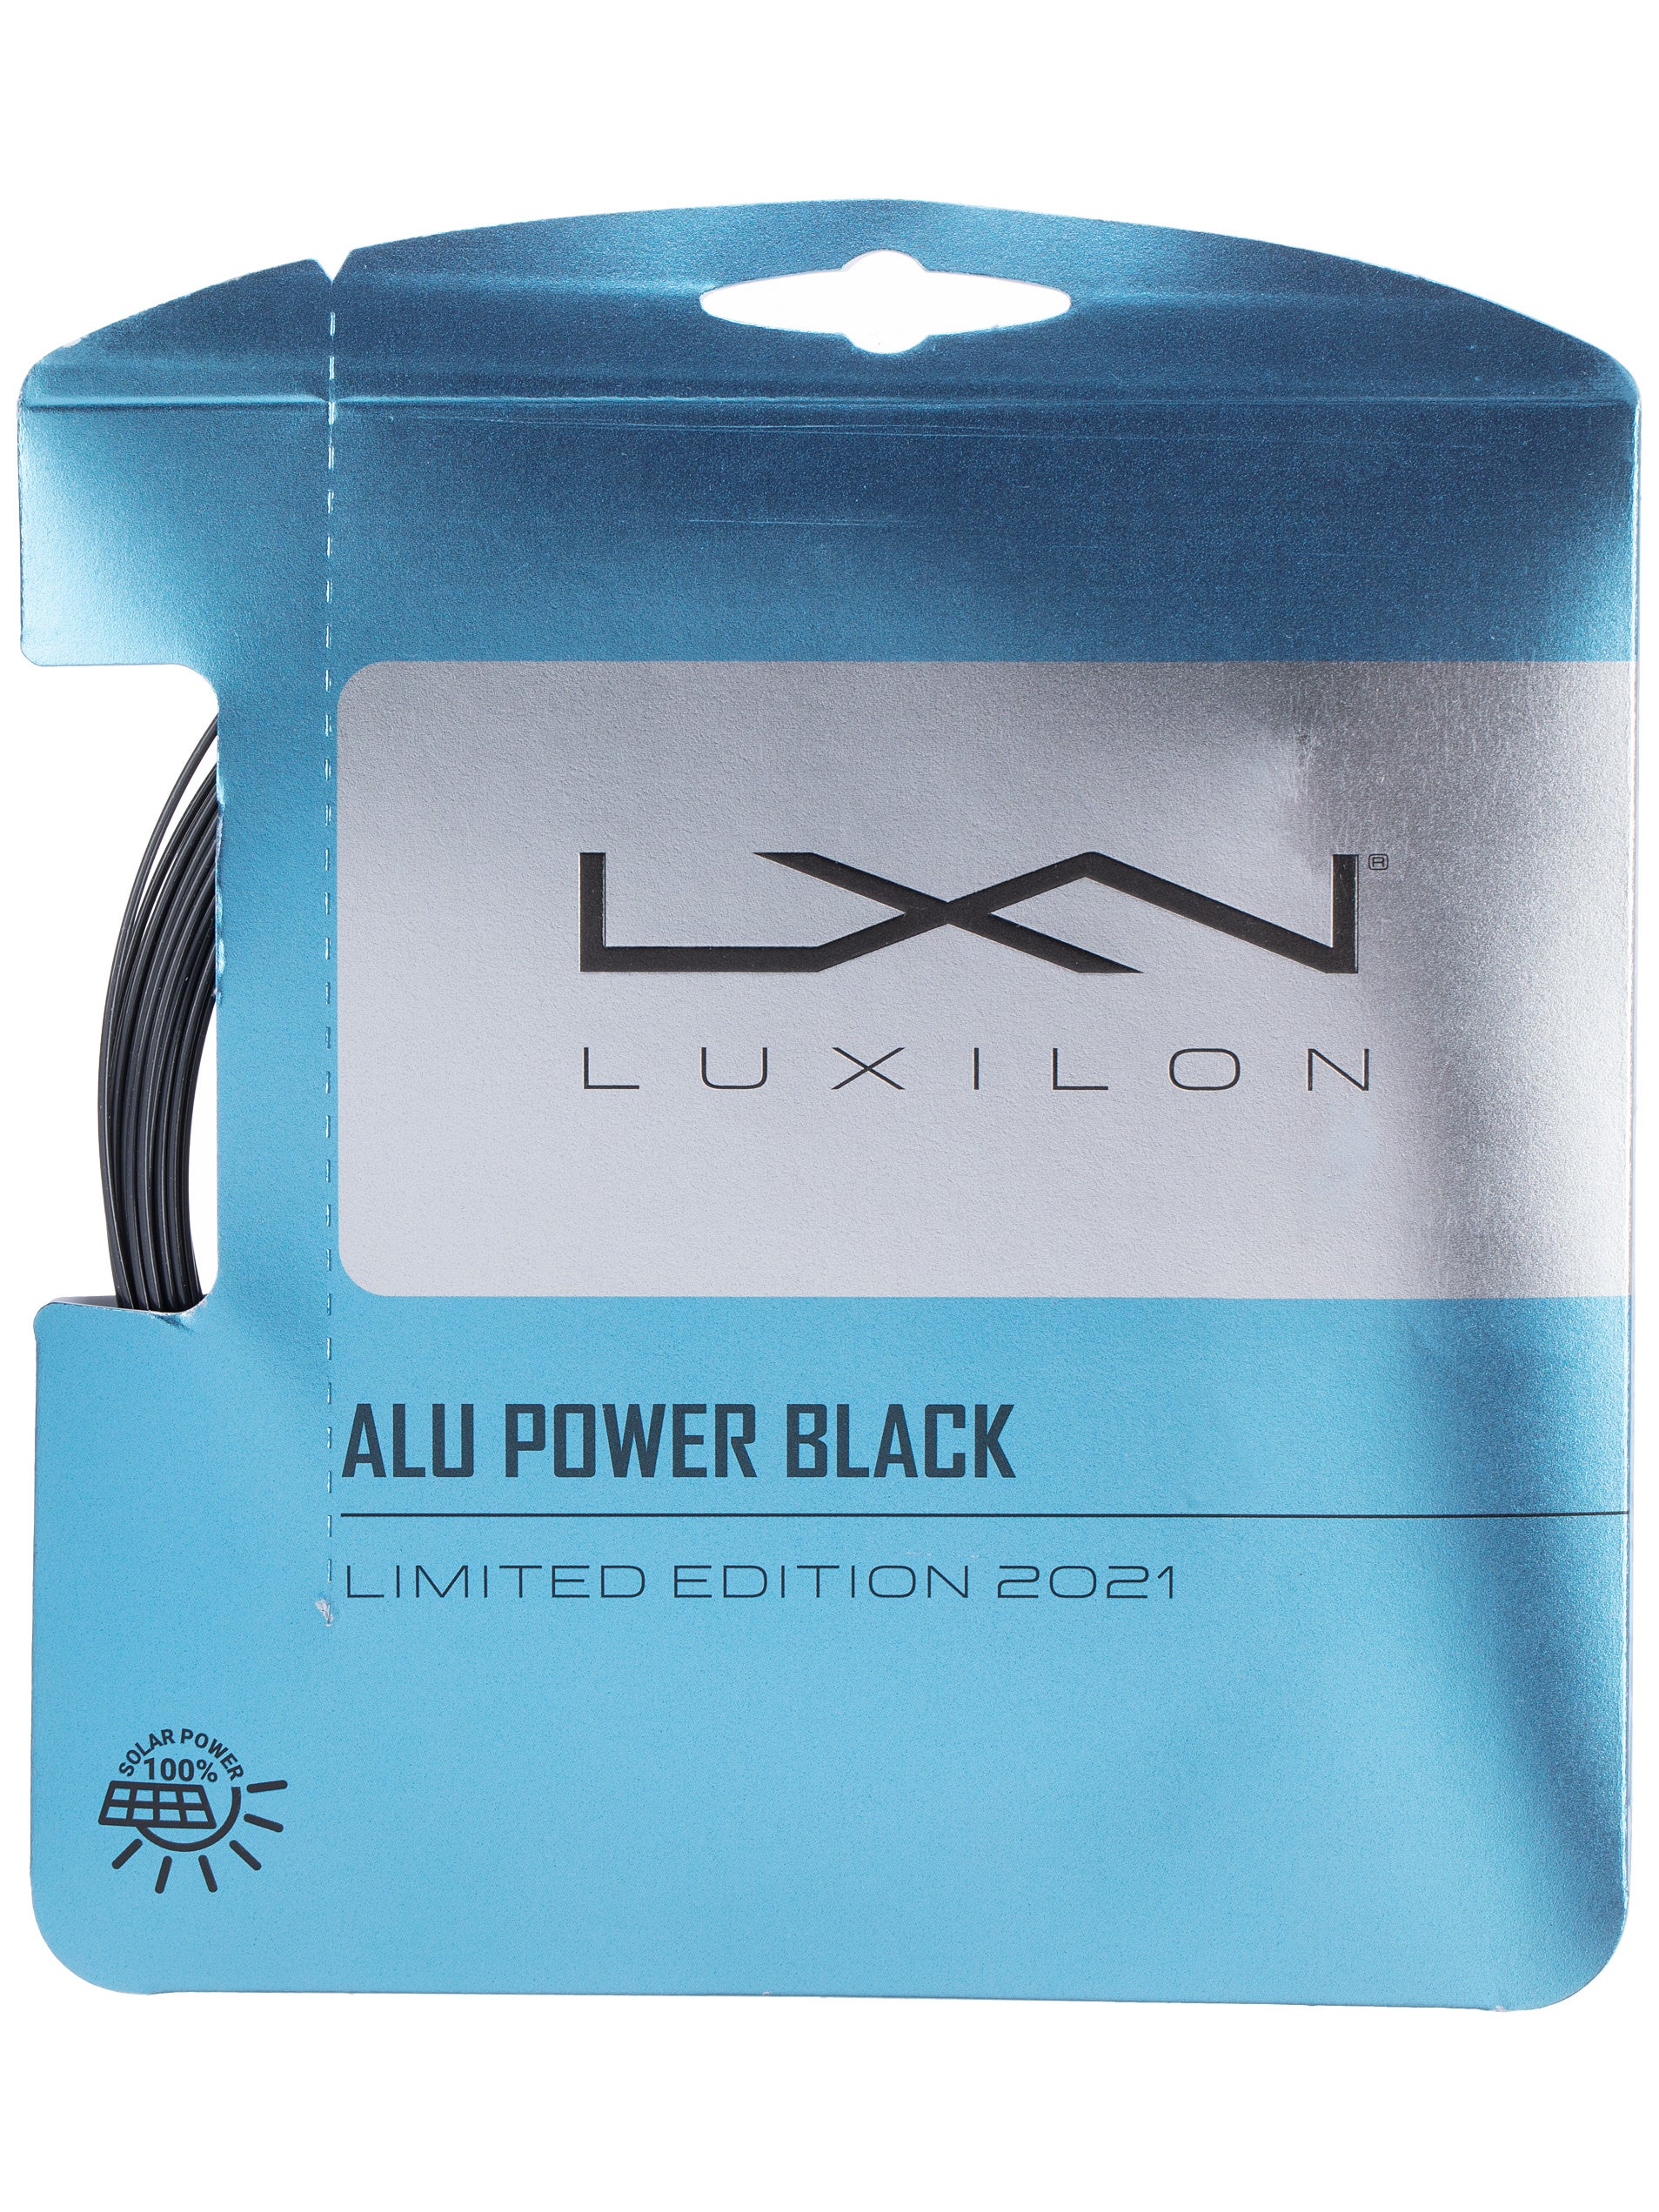 Details about    Rough Power Black Color Tennis string 200m quality same as LUXILON